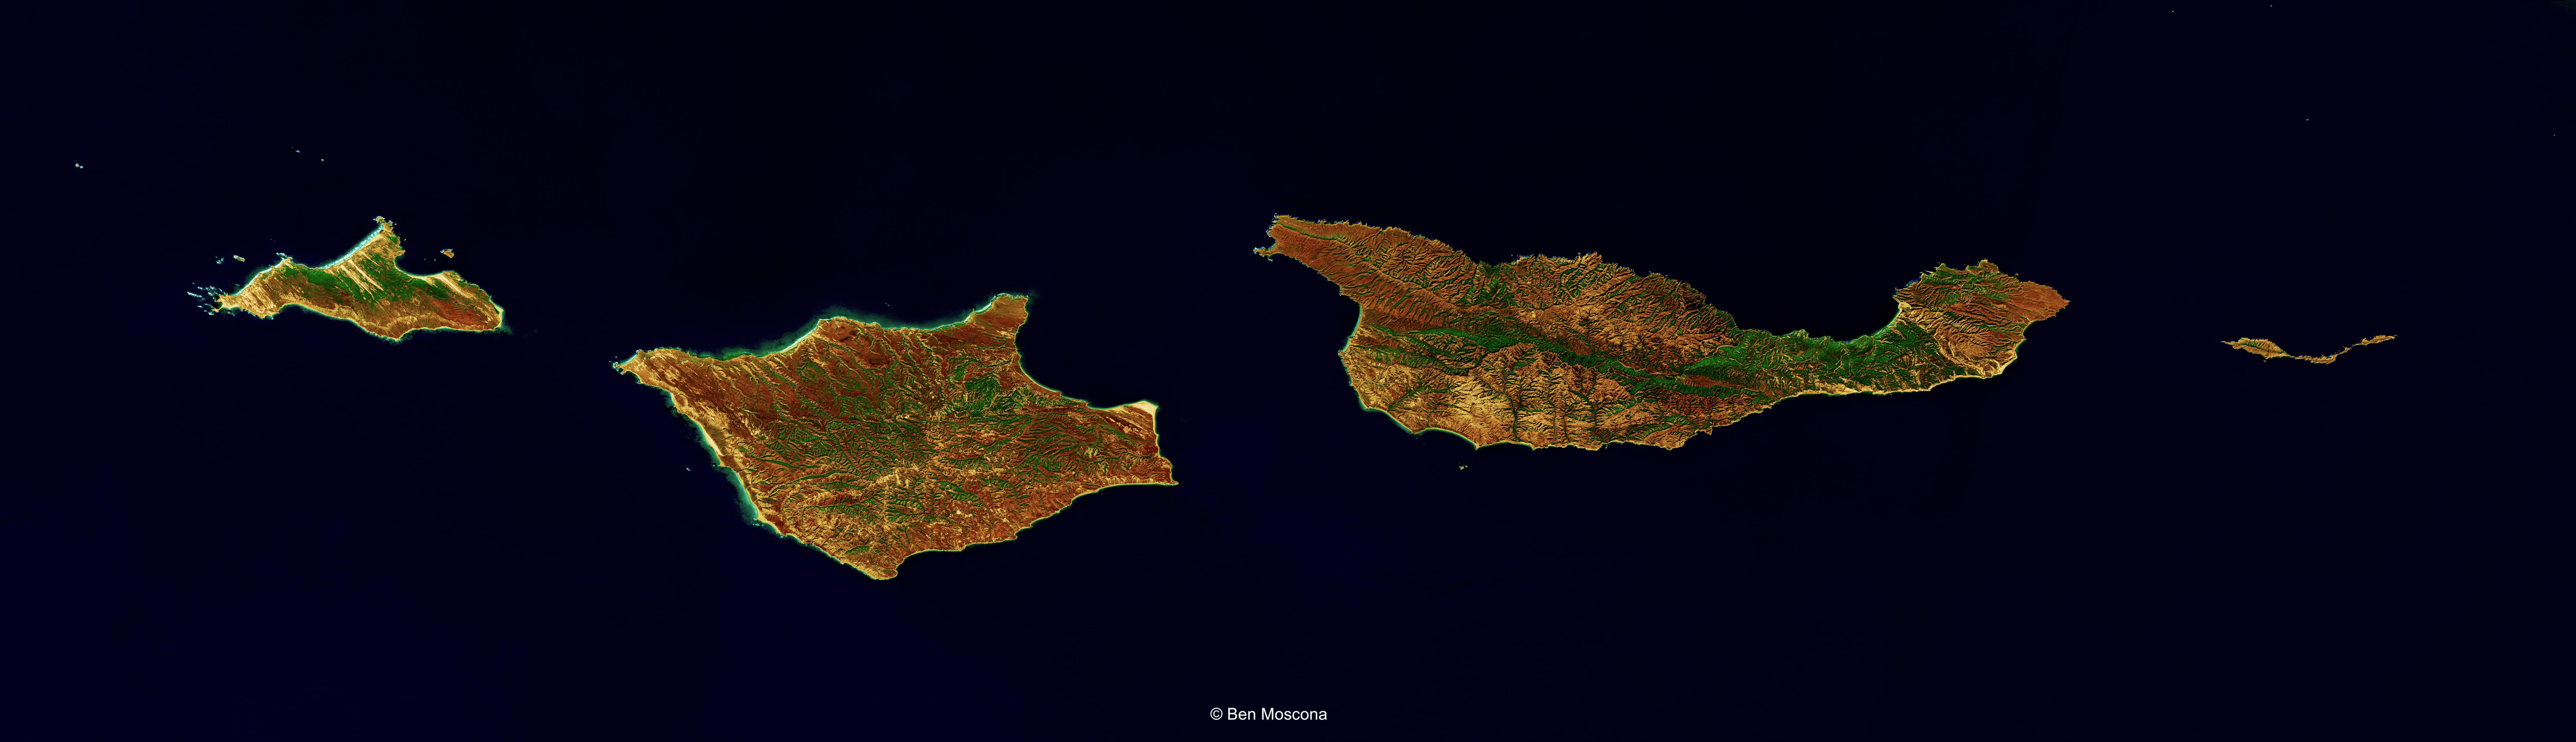 ben moscona satellite art channel islands